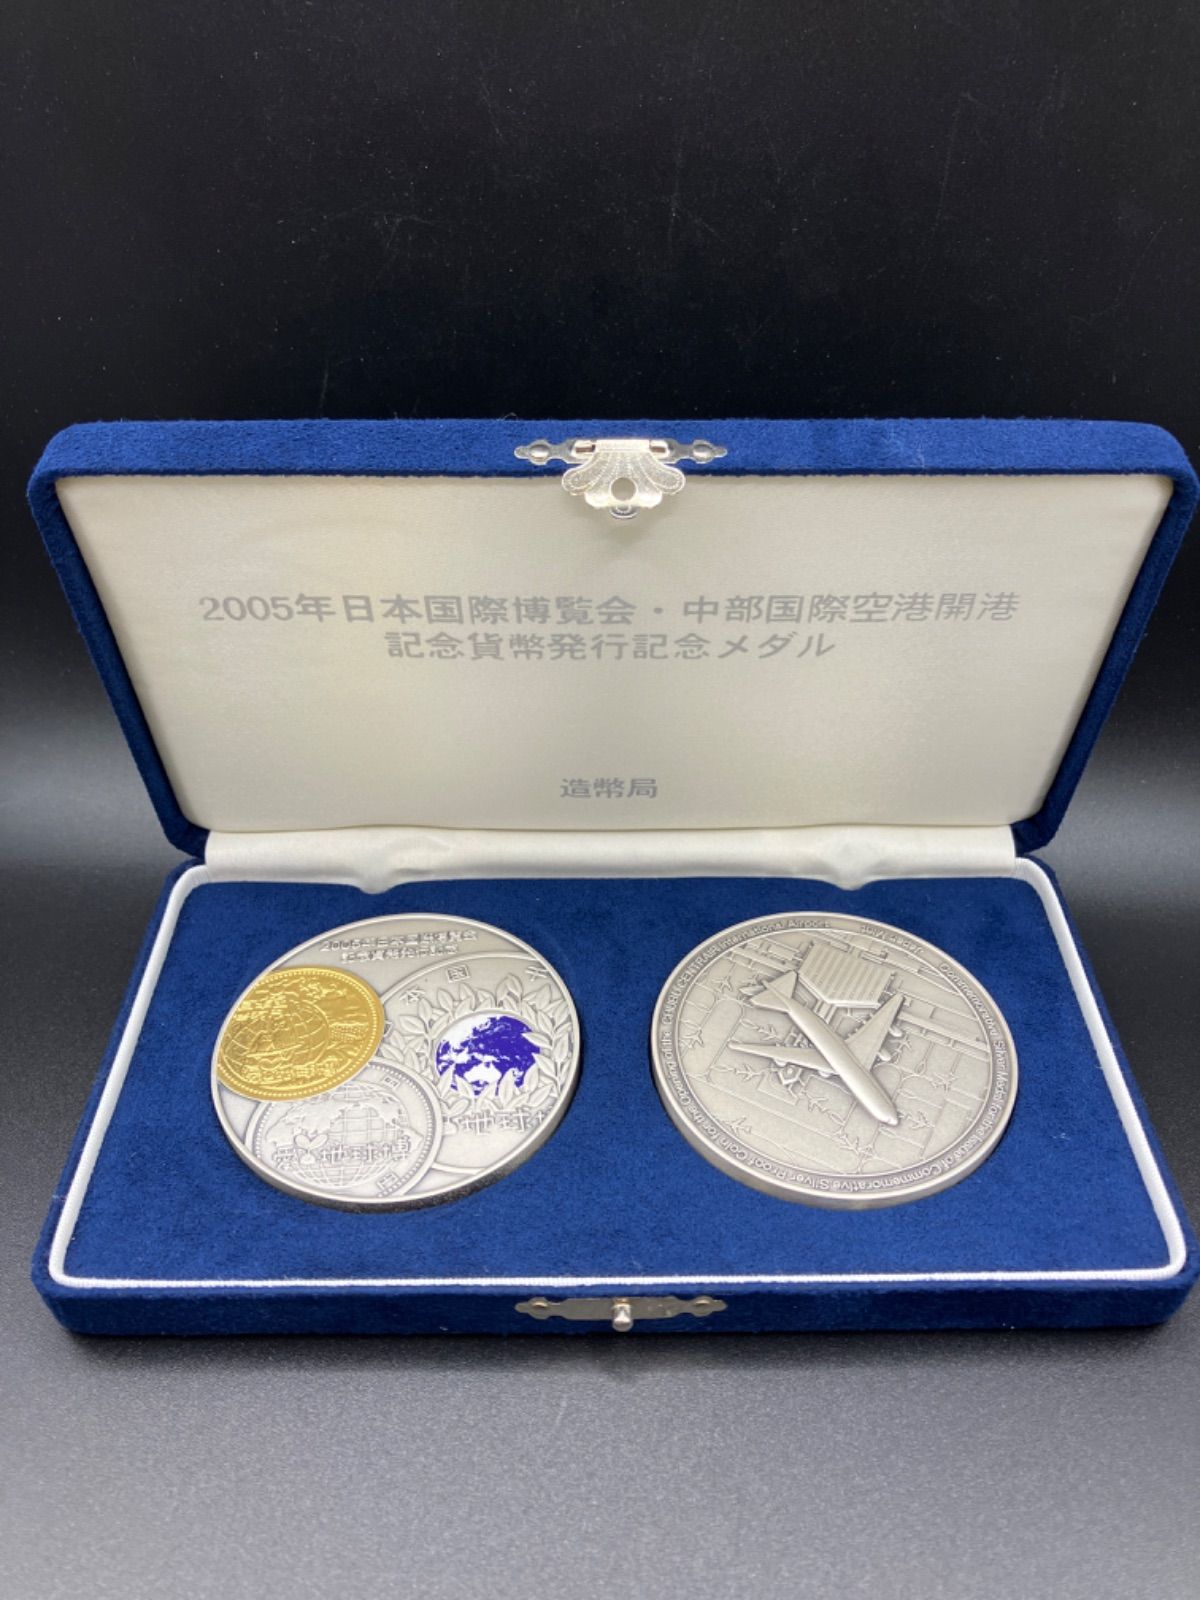 中部国際空港開港記念貨幣 発行記念メダル